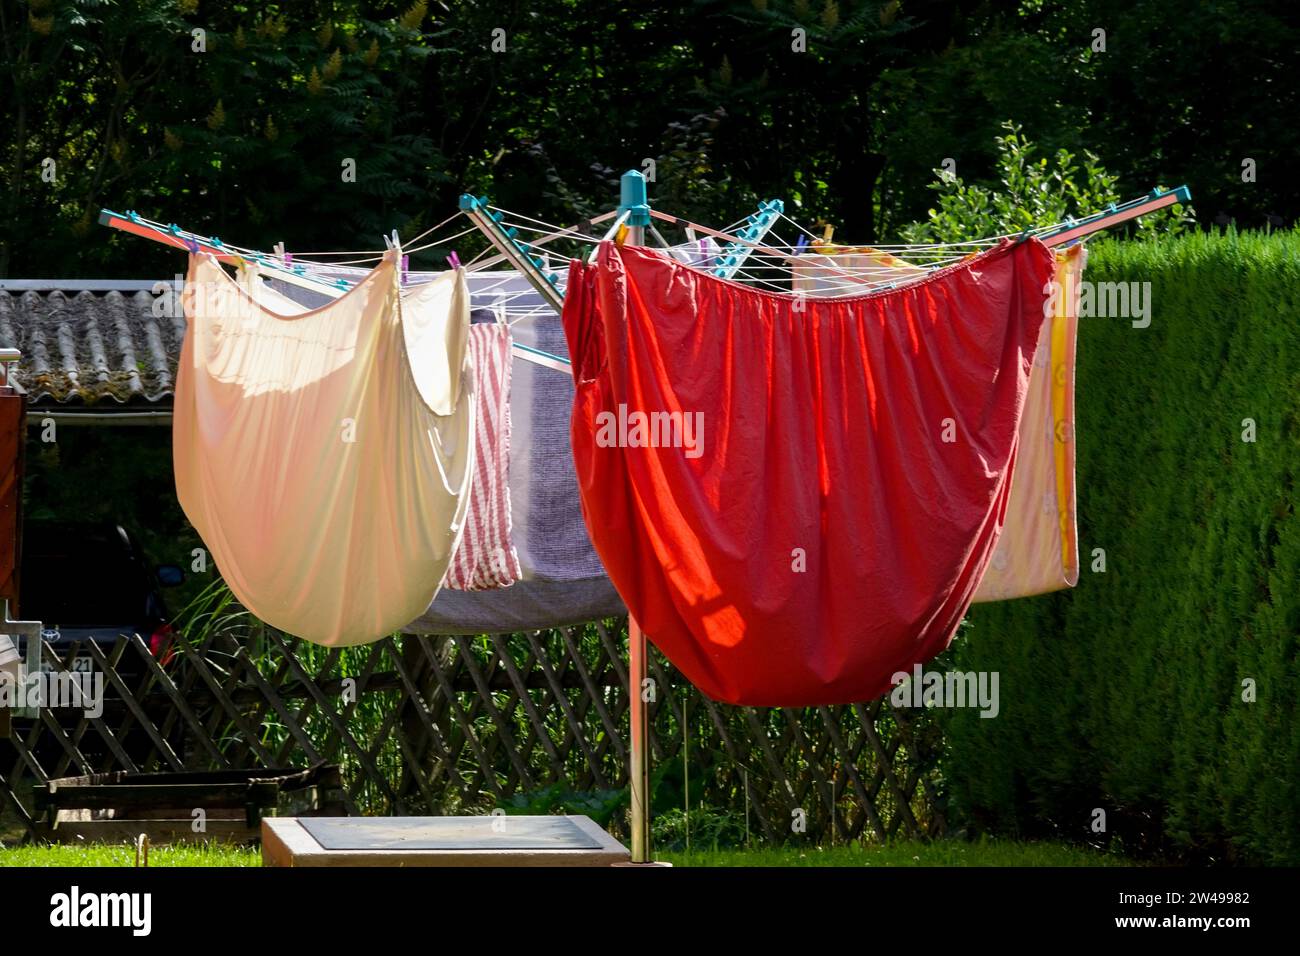 Airer-Wäscheleine, bunt, Wäsche auf rotierender Wäscheleine, saubere Wäsche waschen, Wäscheleine trocknen im Garten Stockfoto